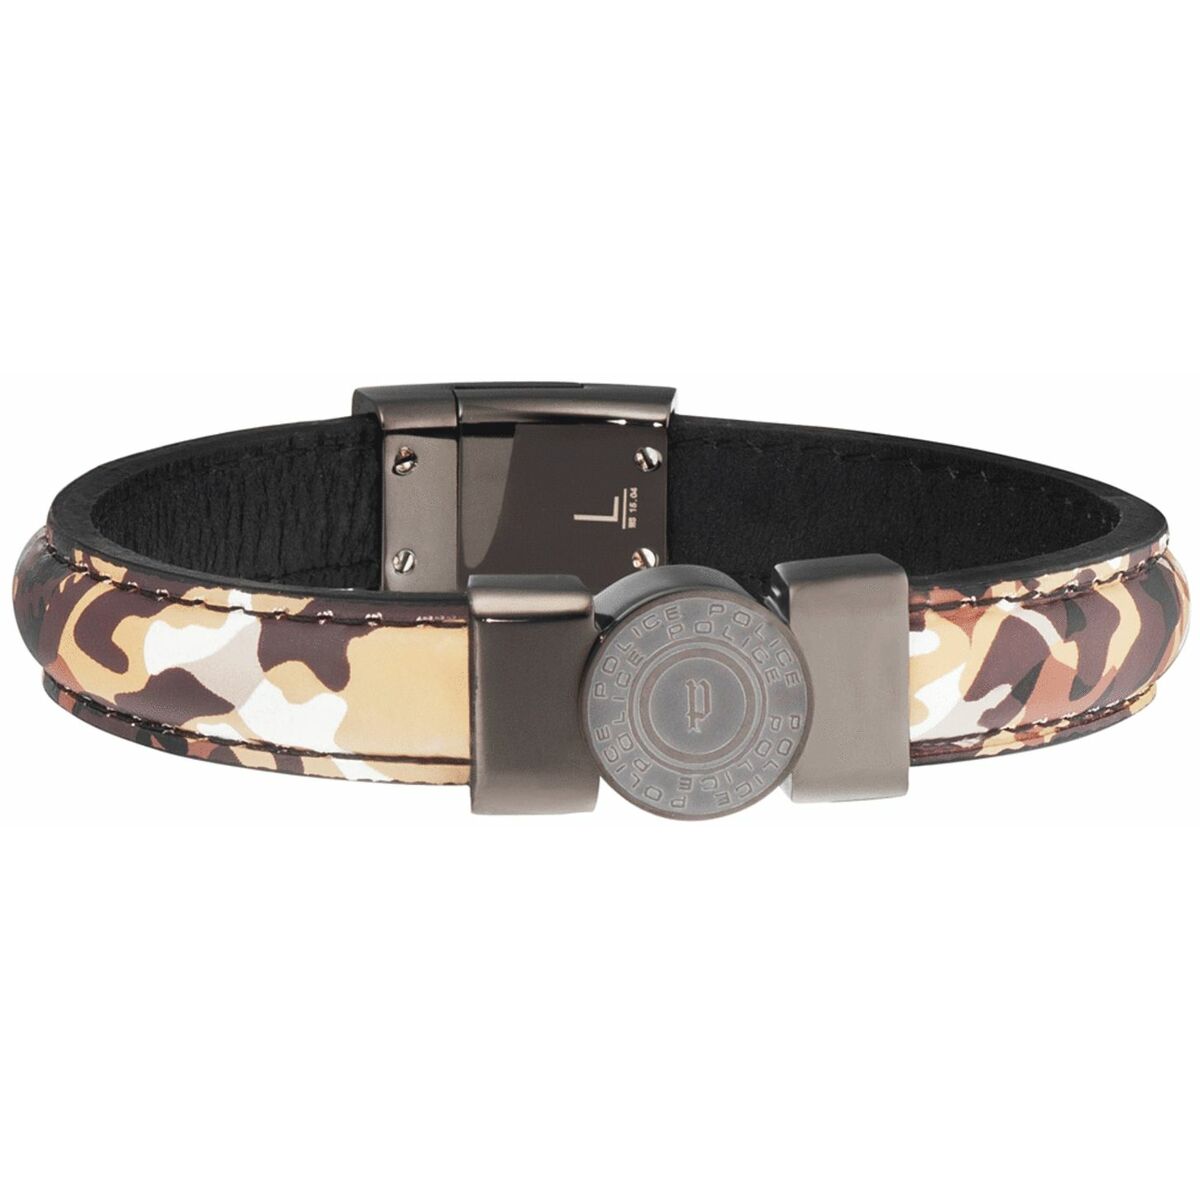 Men's Bracelet Police PJ25556BLU.02-L Leather 21 cm